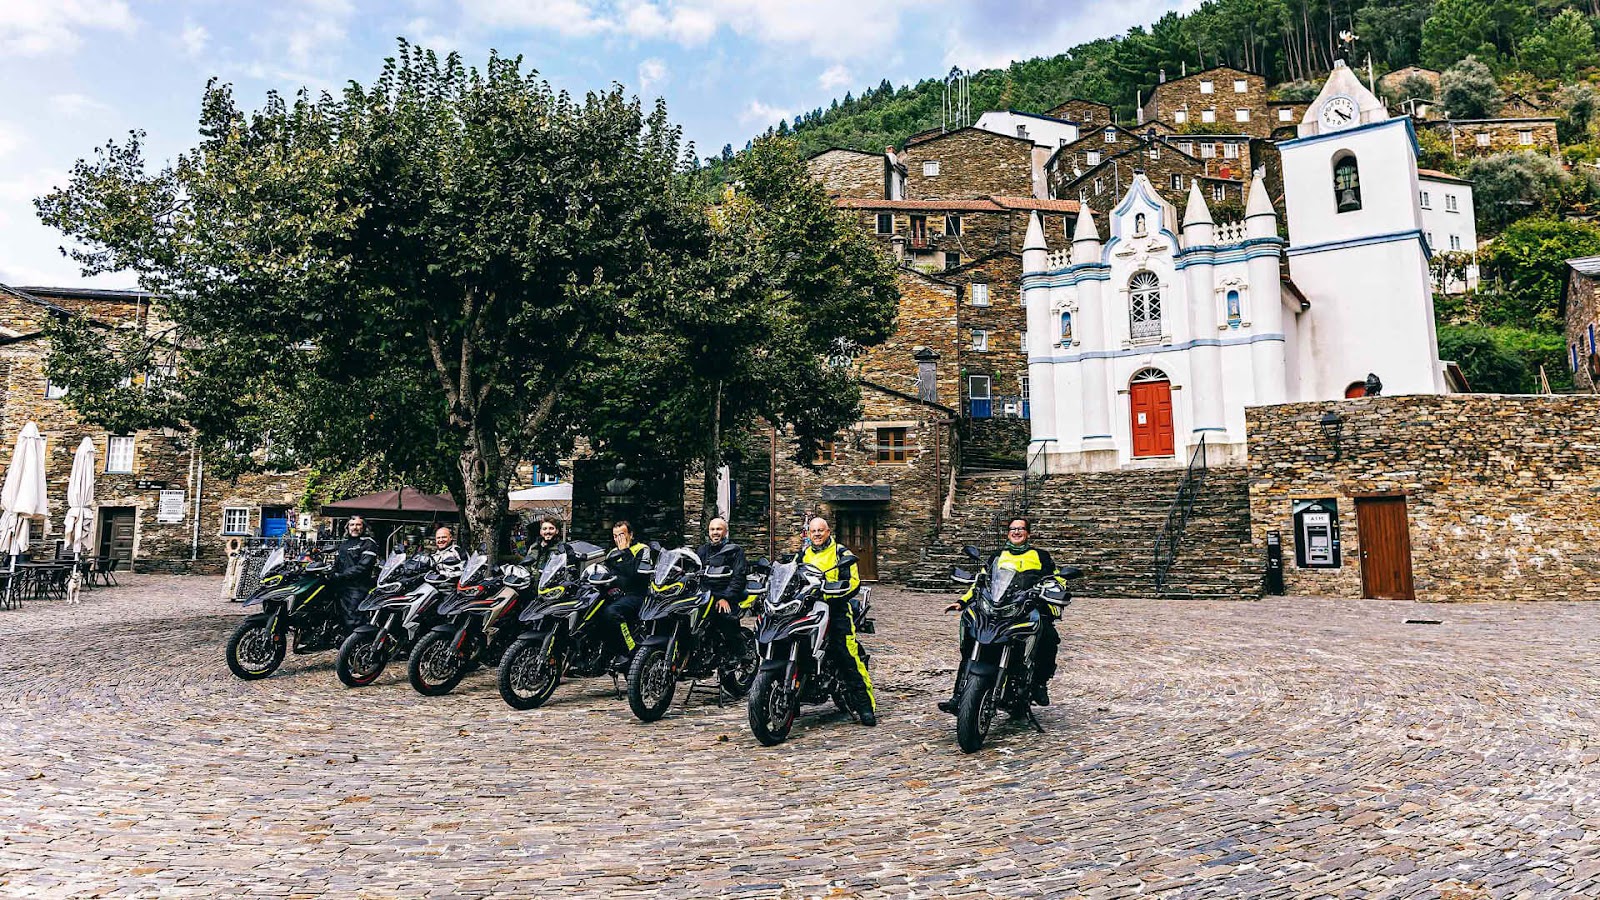 Wenn ein Motorradfahrer Piódão noch nicht kennt, sollte er diese Situation umkehren. Die Straßen dorthin sind fantastisch und der Ort ist einzigartig!